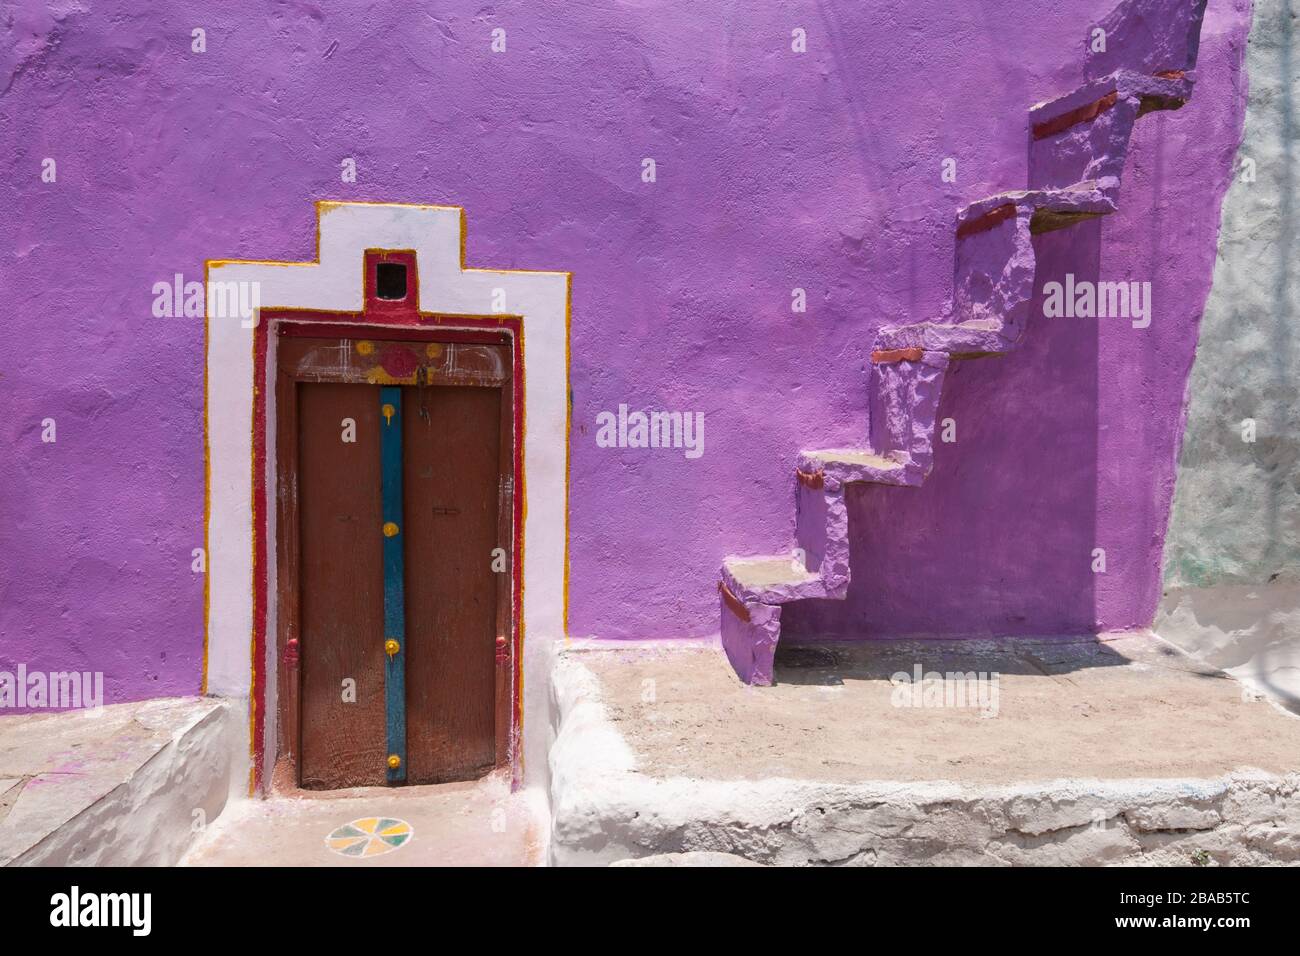 mur coloré de porte et photographie abstraite d'escalier Banque D'Images